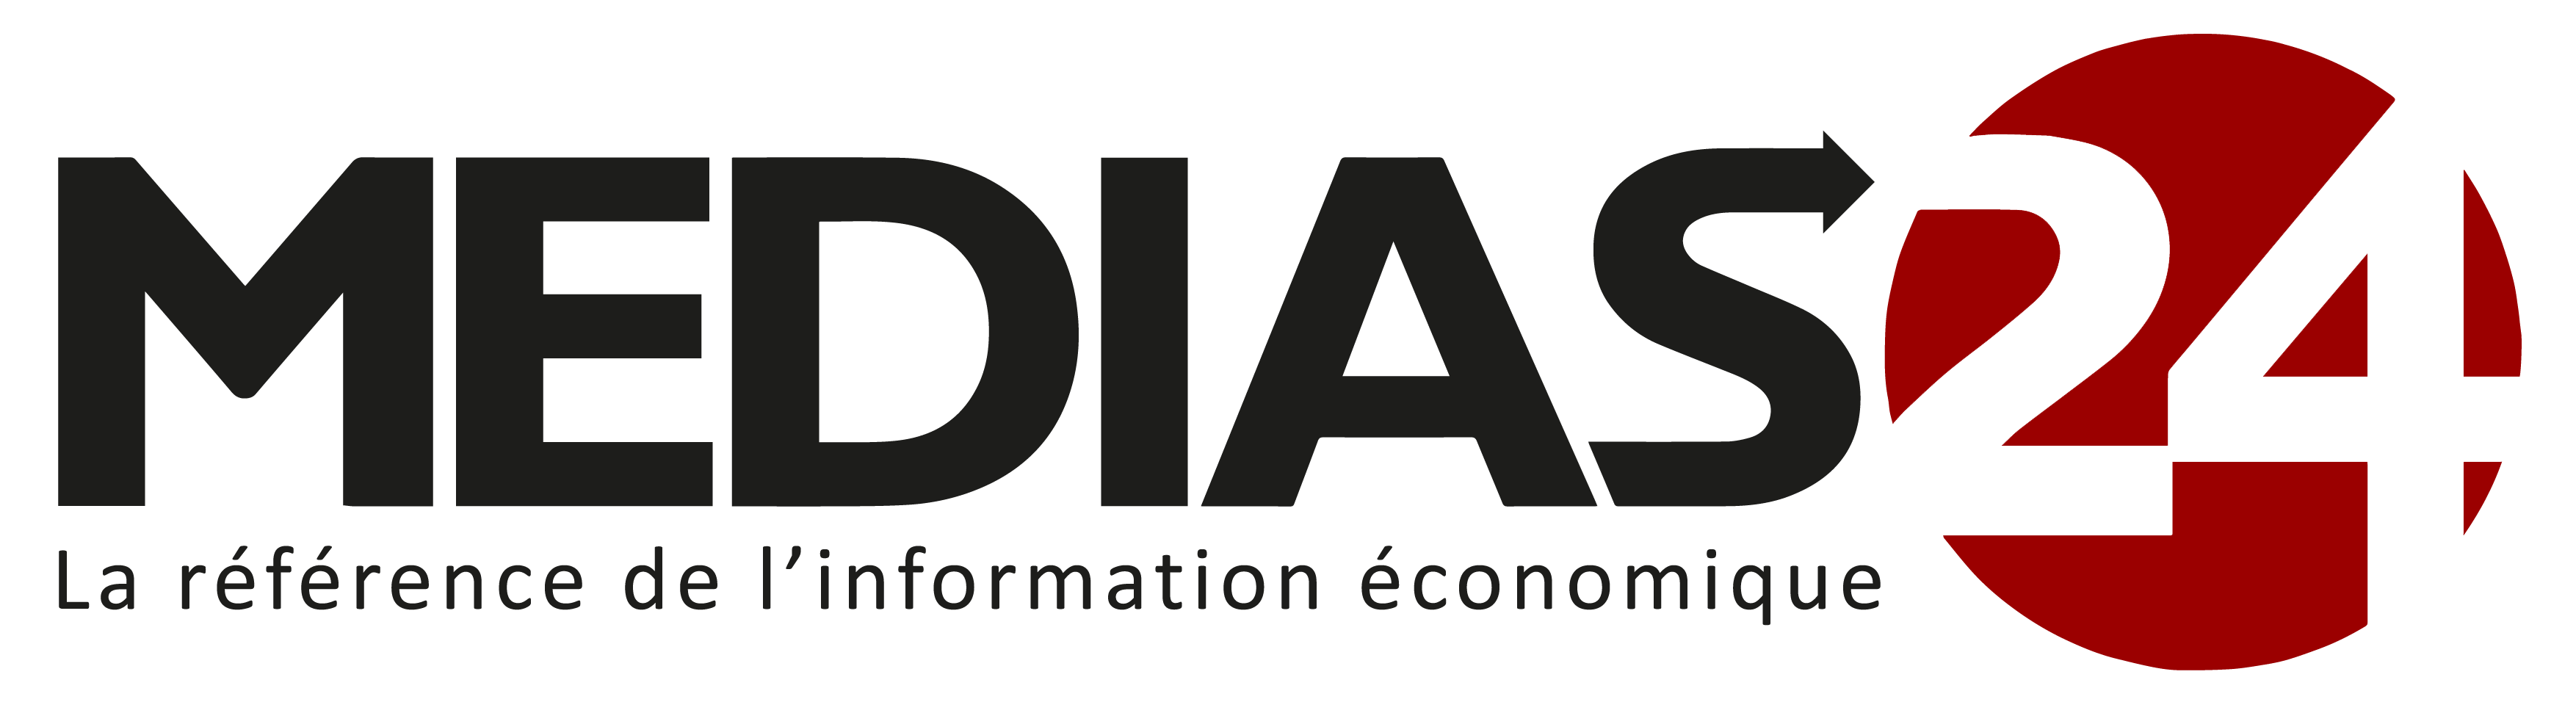 Médias24 - Journal économique marocain en ligne